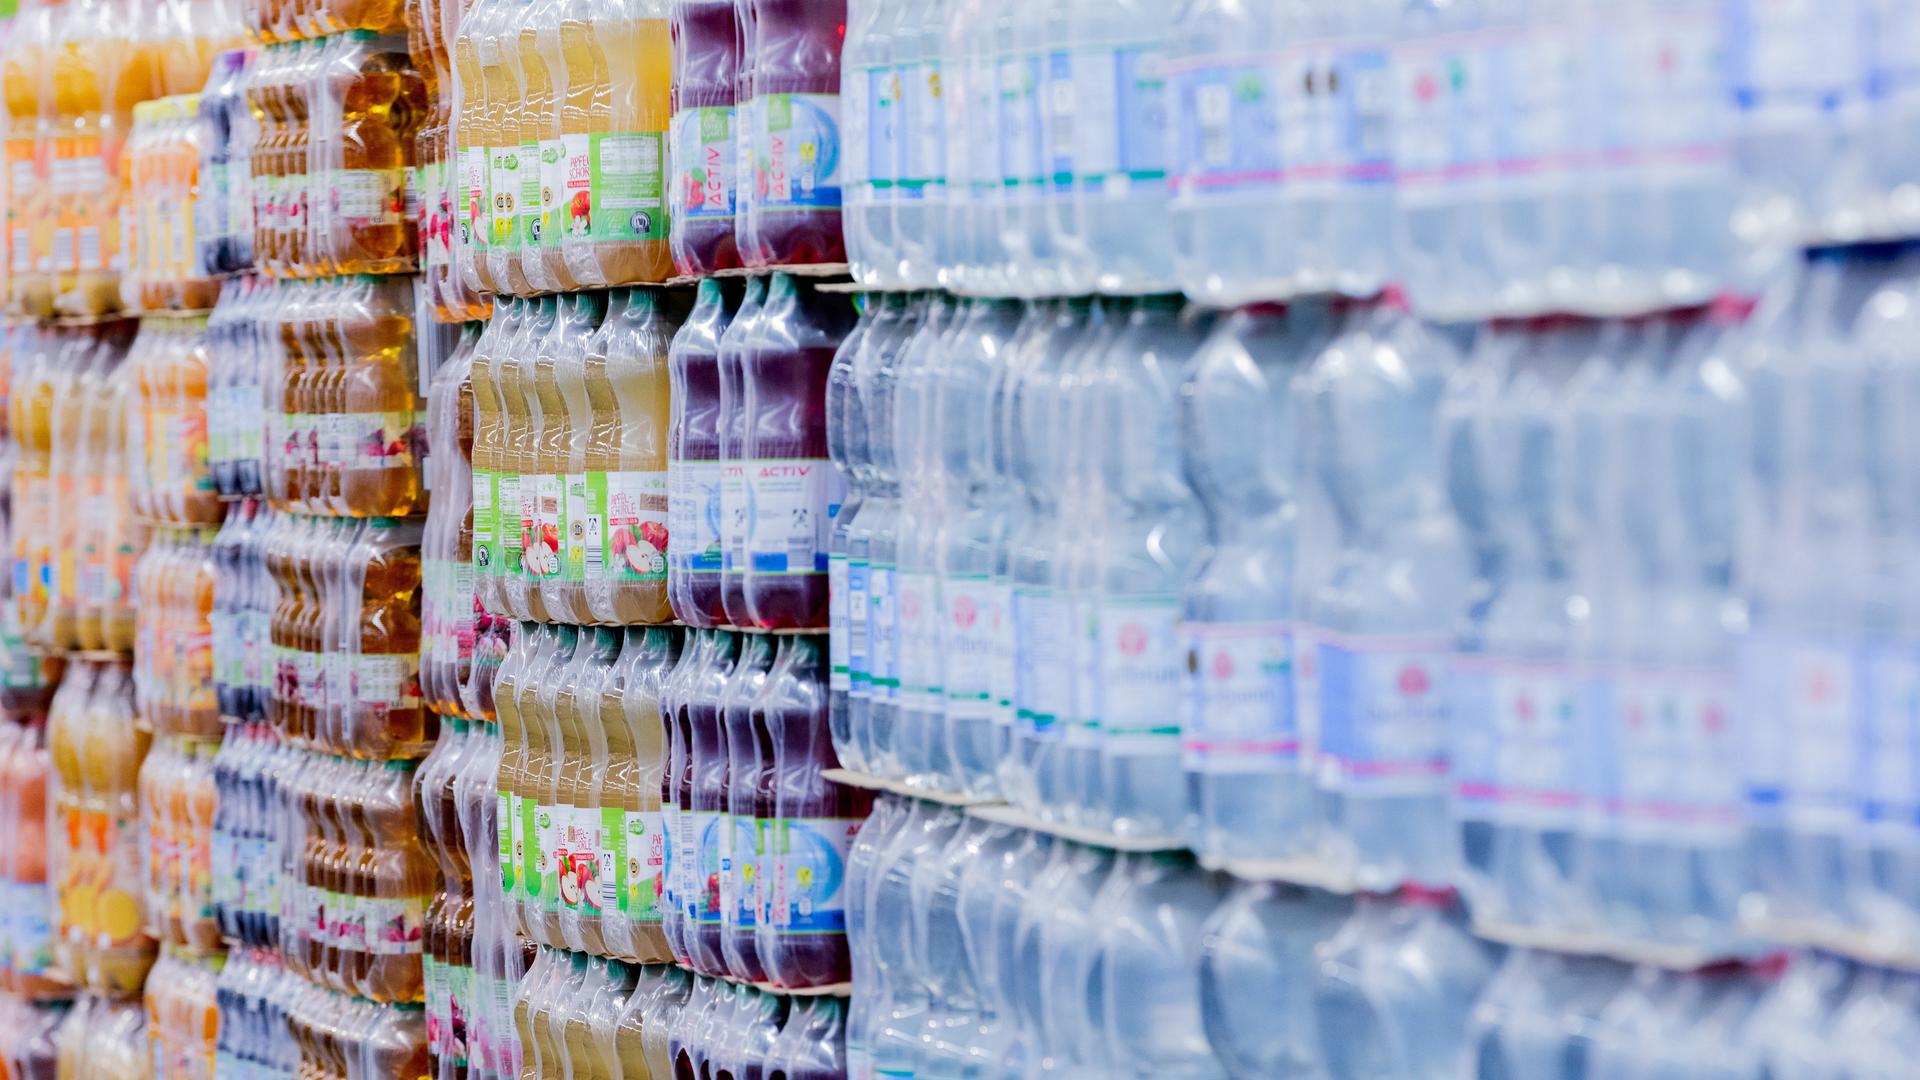 Einweg-Plastikflaschen stehen in einem Supermarkt auf Paletten.